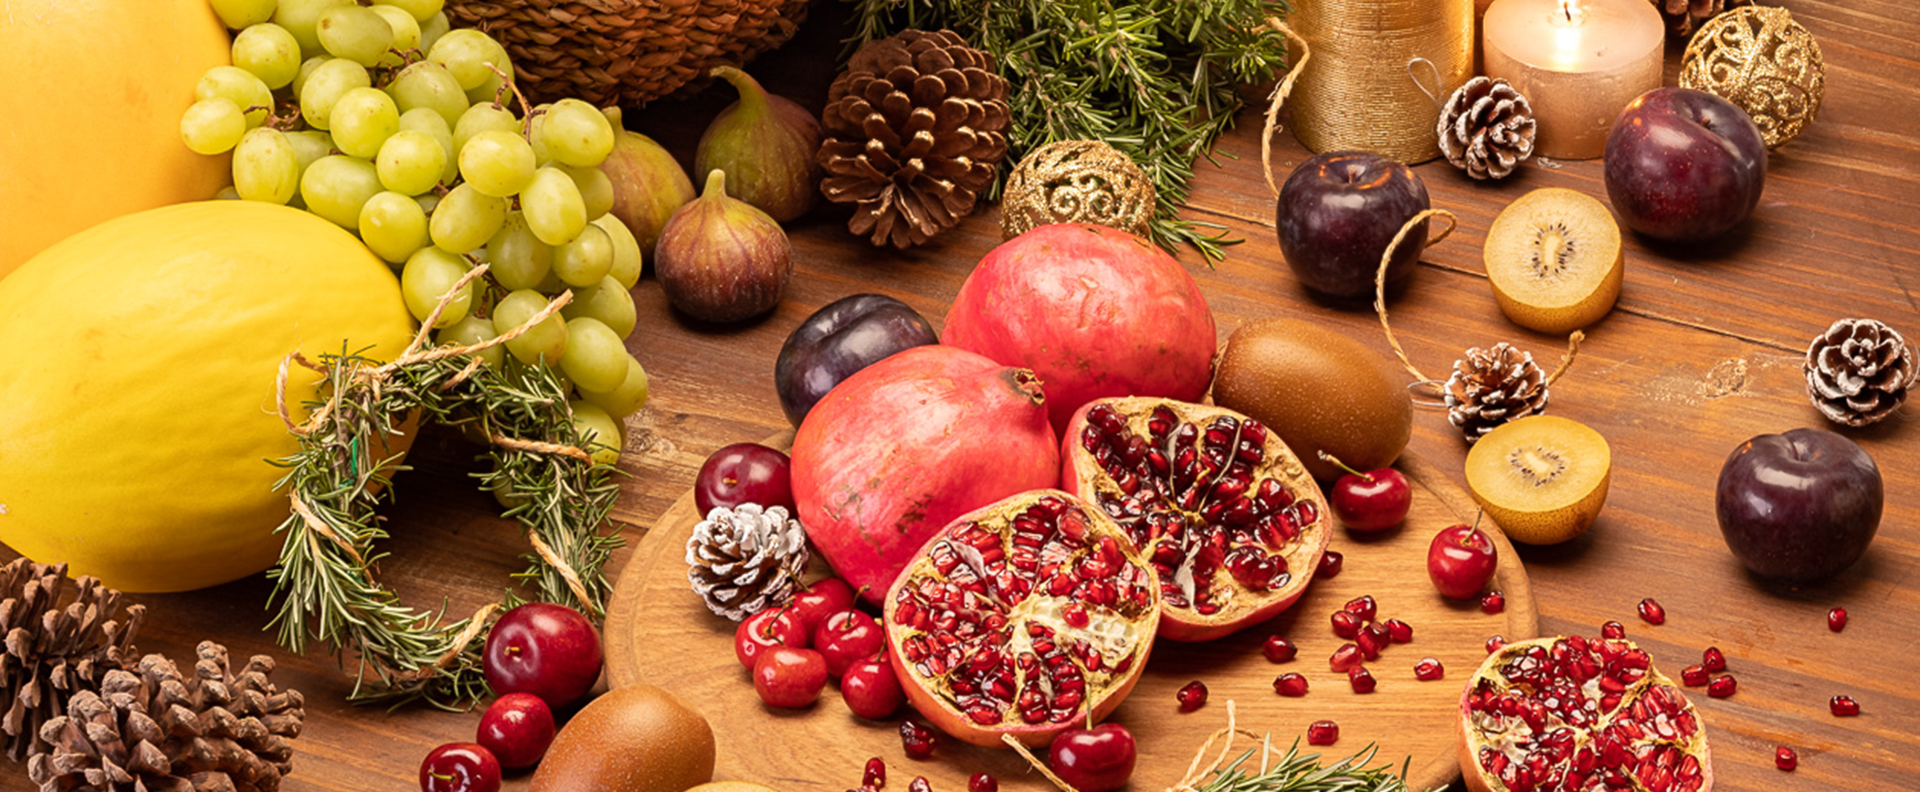 Dica: Saiba como decorar mesa de Natal com frutas de época | Blog |  Obahortifruti